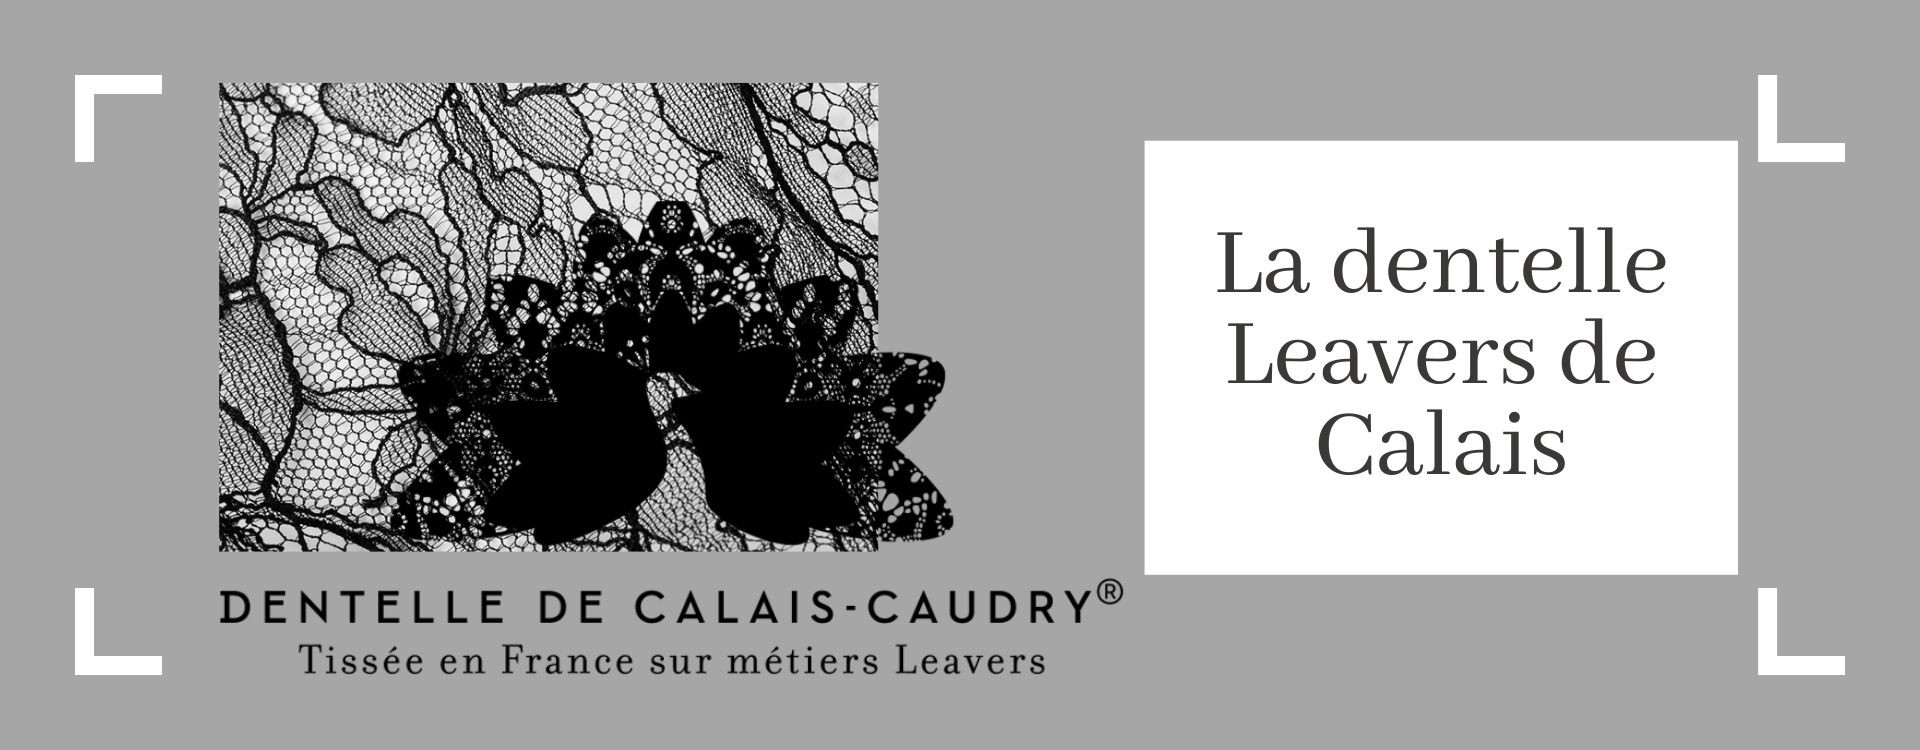 La dentelle Leavers de Calais